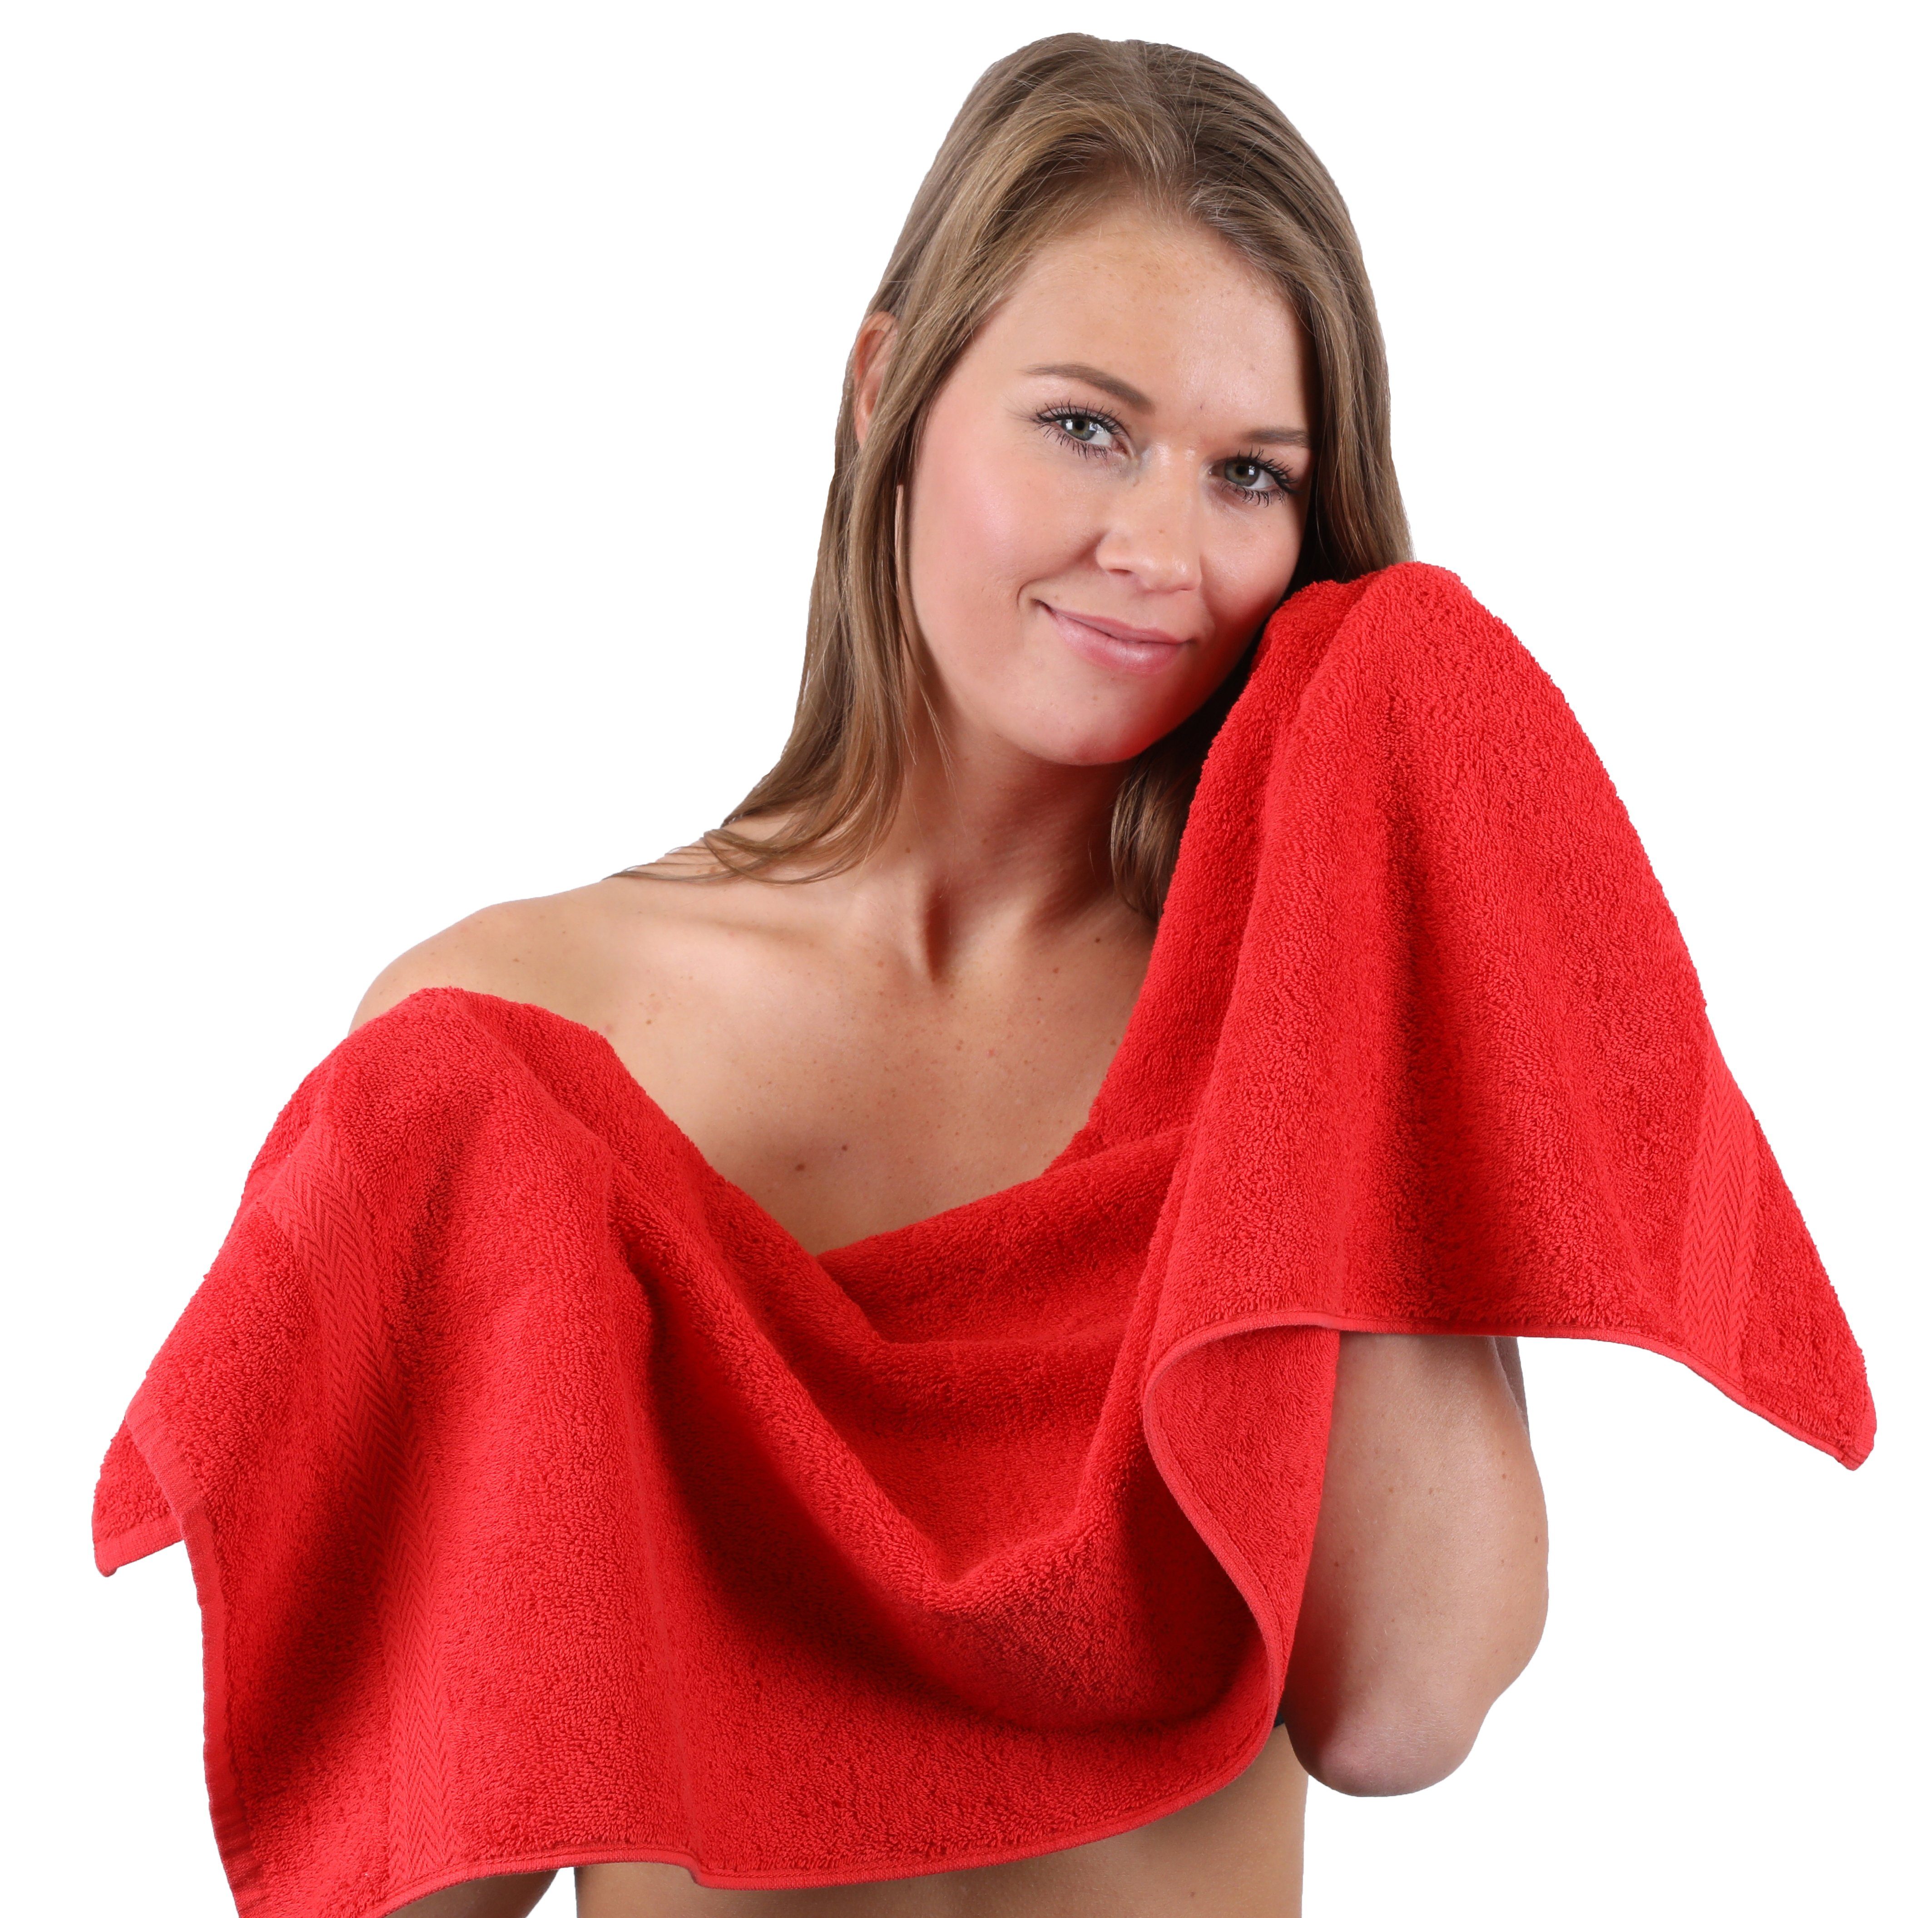 Set & (10-tlg) Handtuch Rot Handtuch-Set Premium Baumwolle, Anthrazit, Farbe Betz 10-TLG. 100%